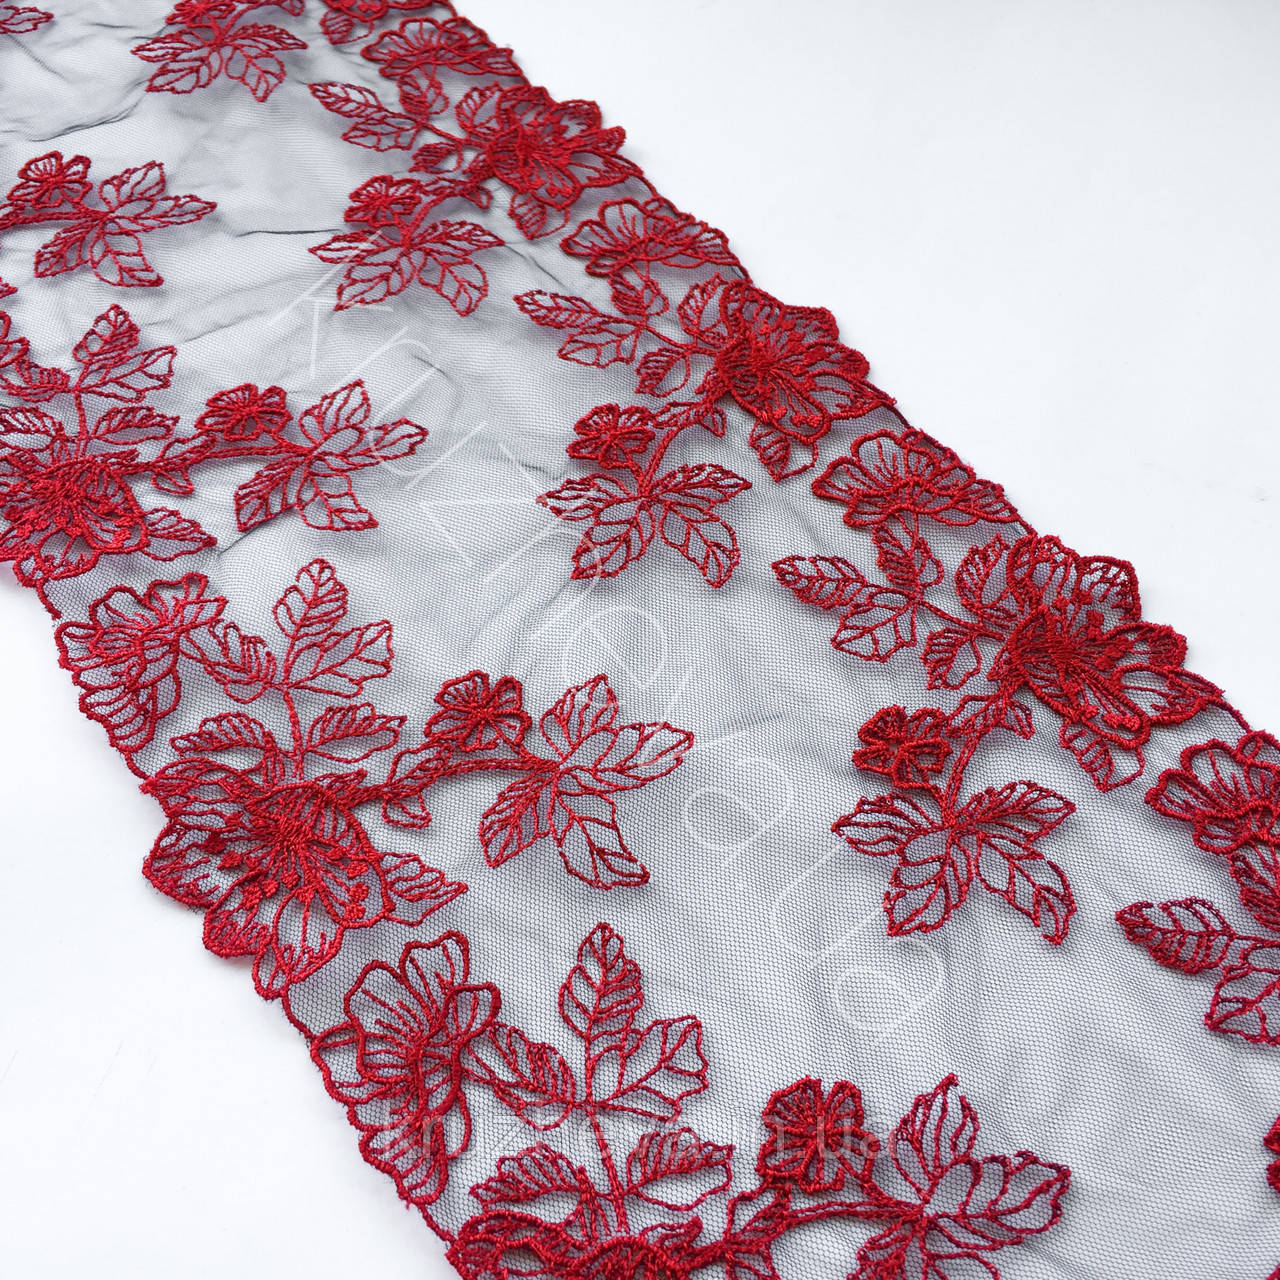 Ажурне мереживо, вишивка на сітці: вишивка червоного кольору по чорній сіткі, ширина 21 см